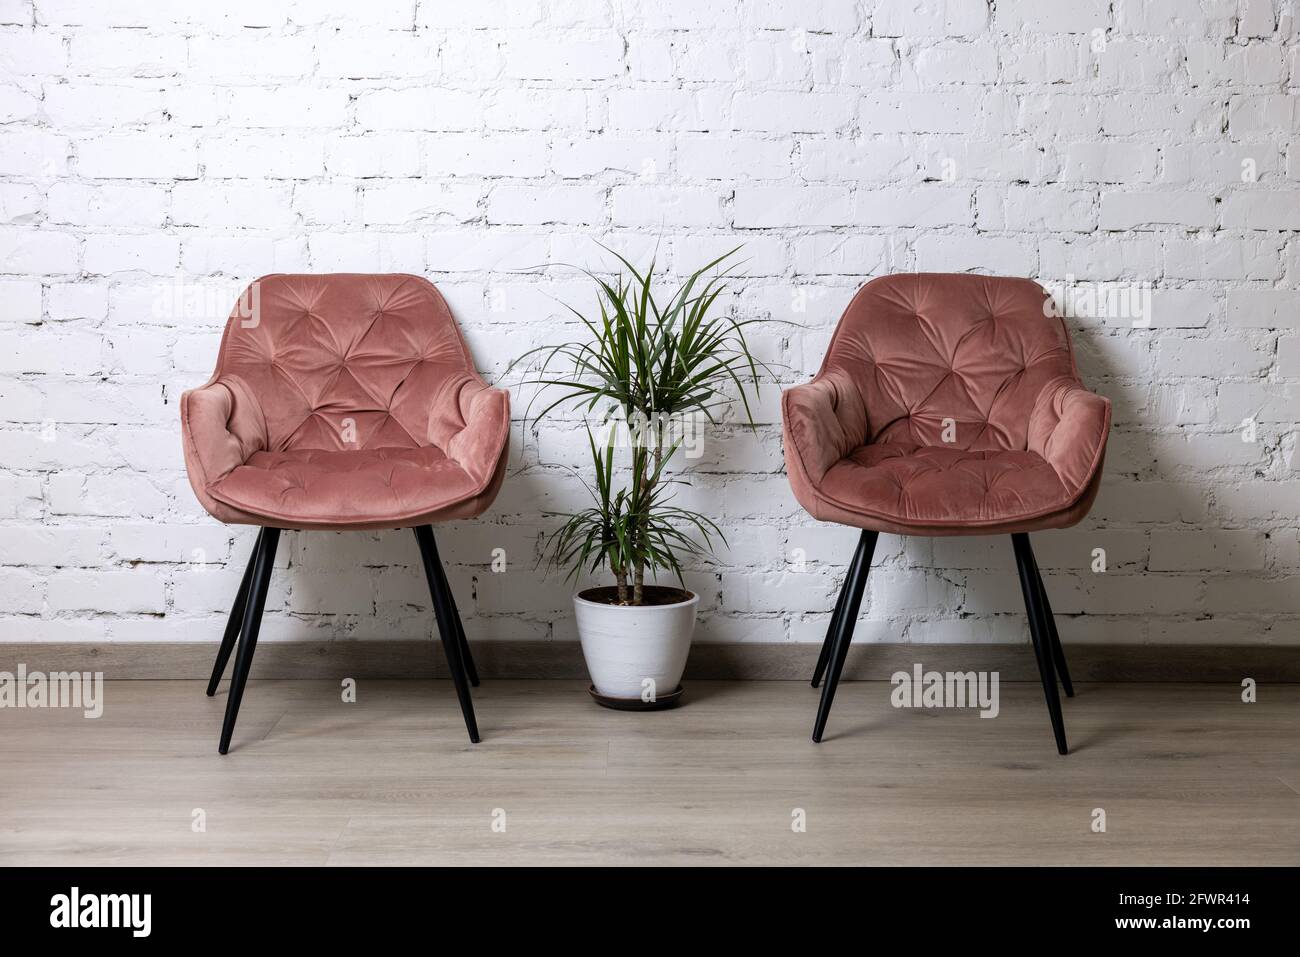 due sedie rosa imbottite e palma da parete in mattoni bianchi. interni minimalisti Foto Stock